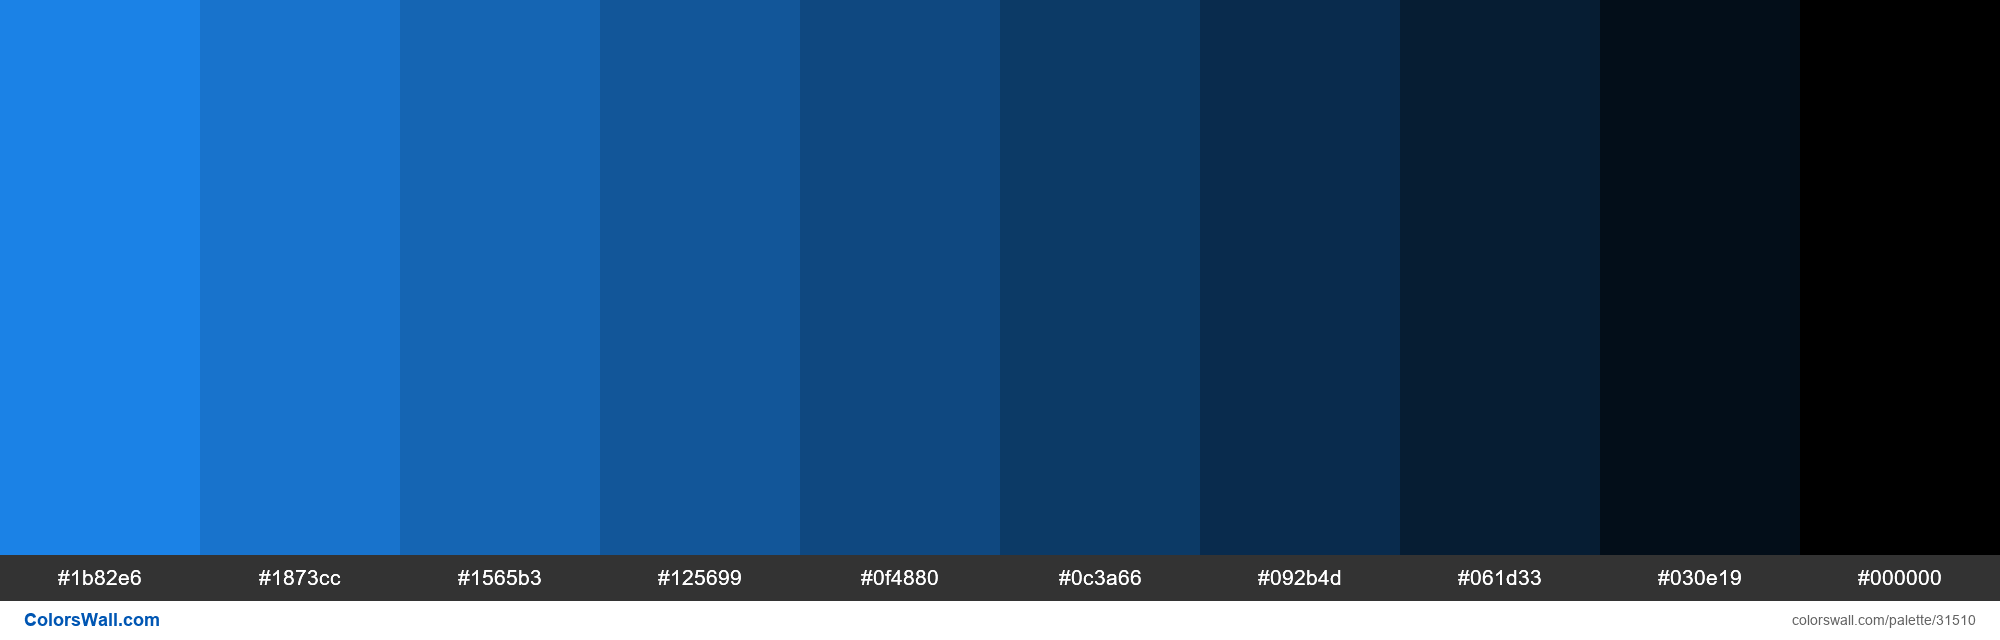 Shades X11 color Dodger Blue #1E90FF hex - ColorsWall